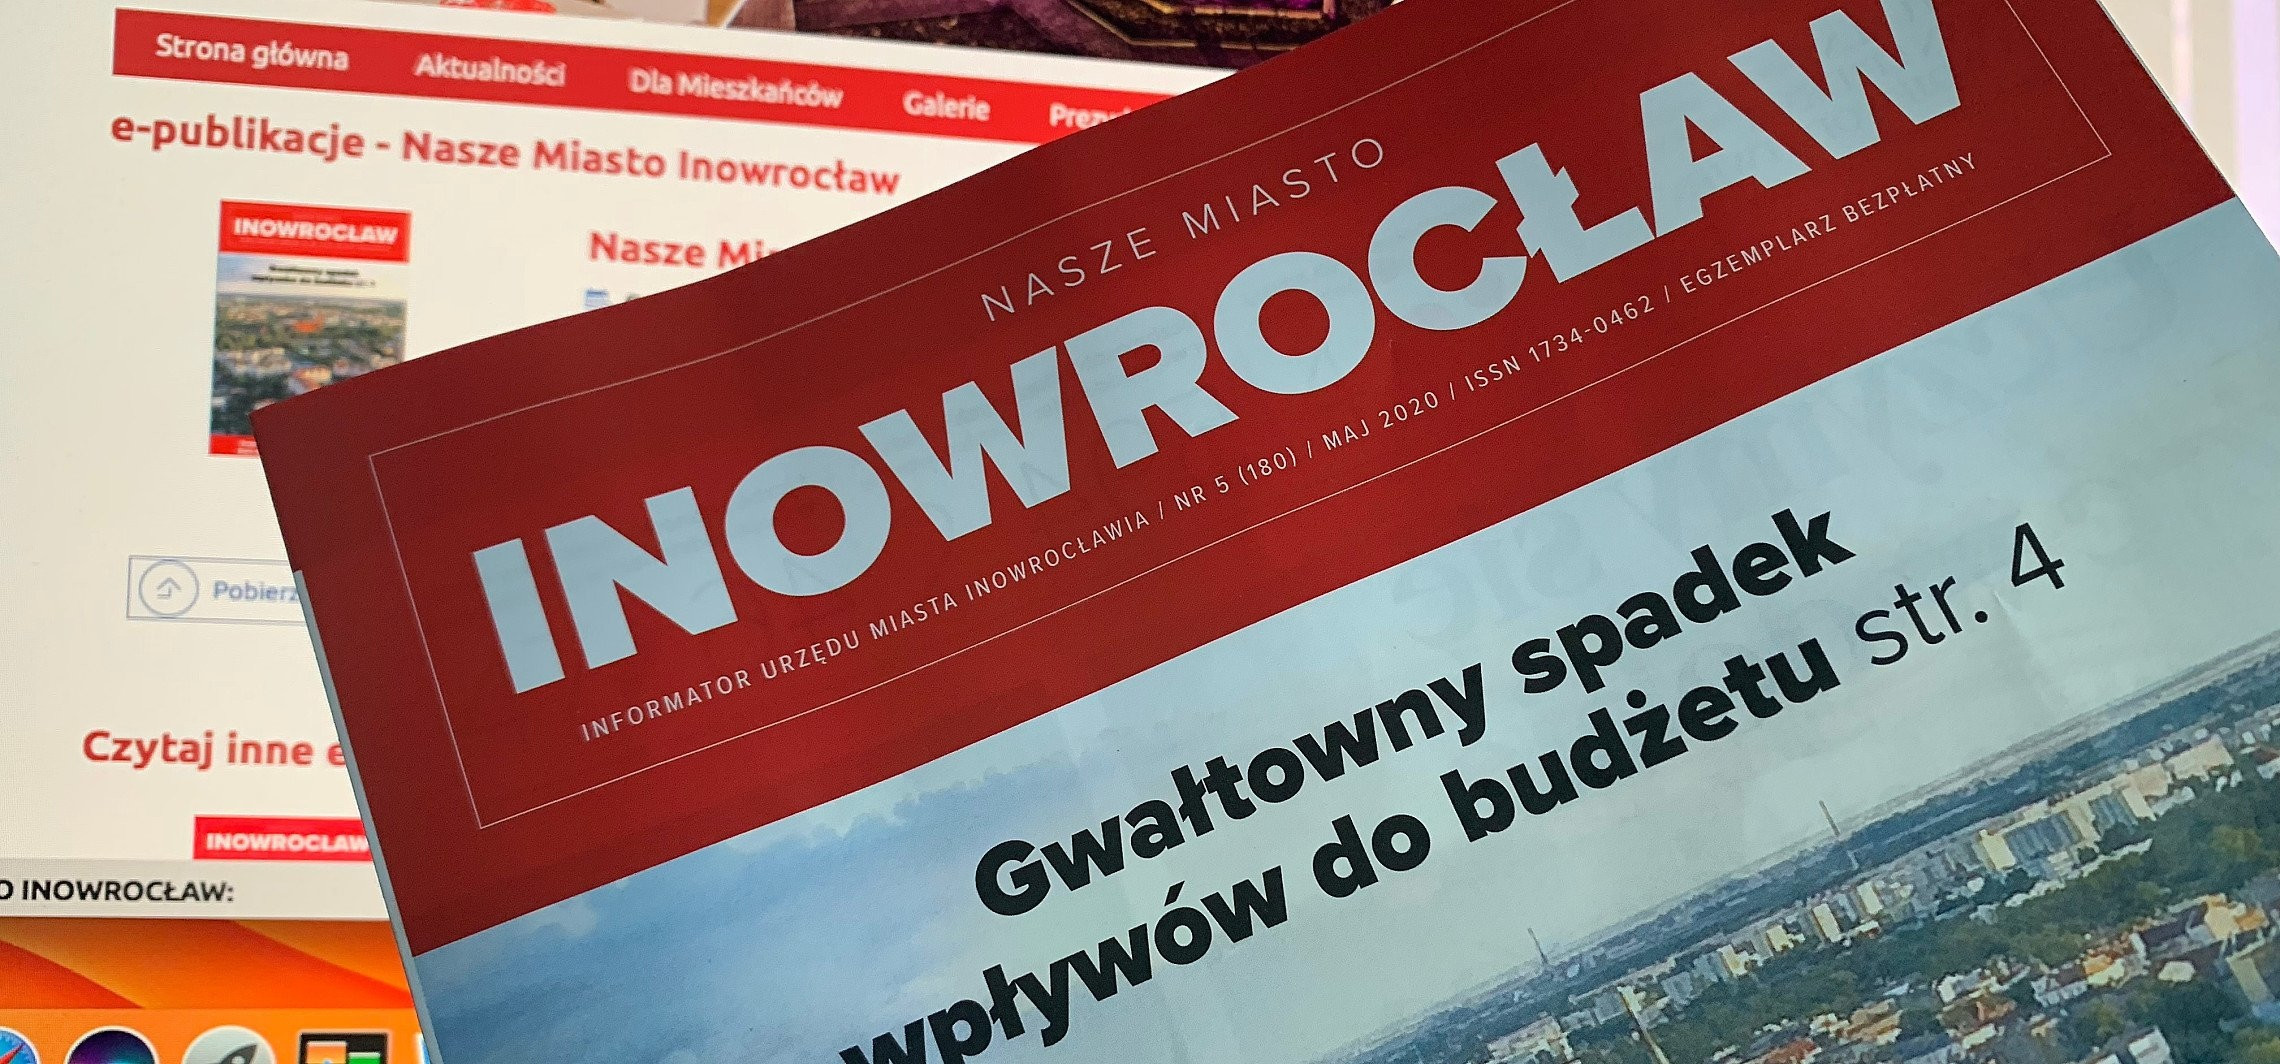 Inowrocław - Ratuszowy informator będzie sporo droższy